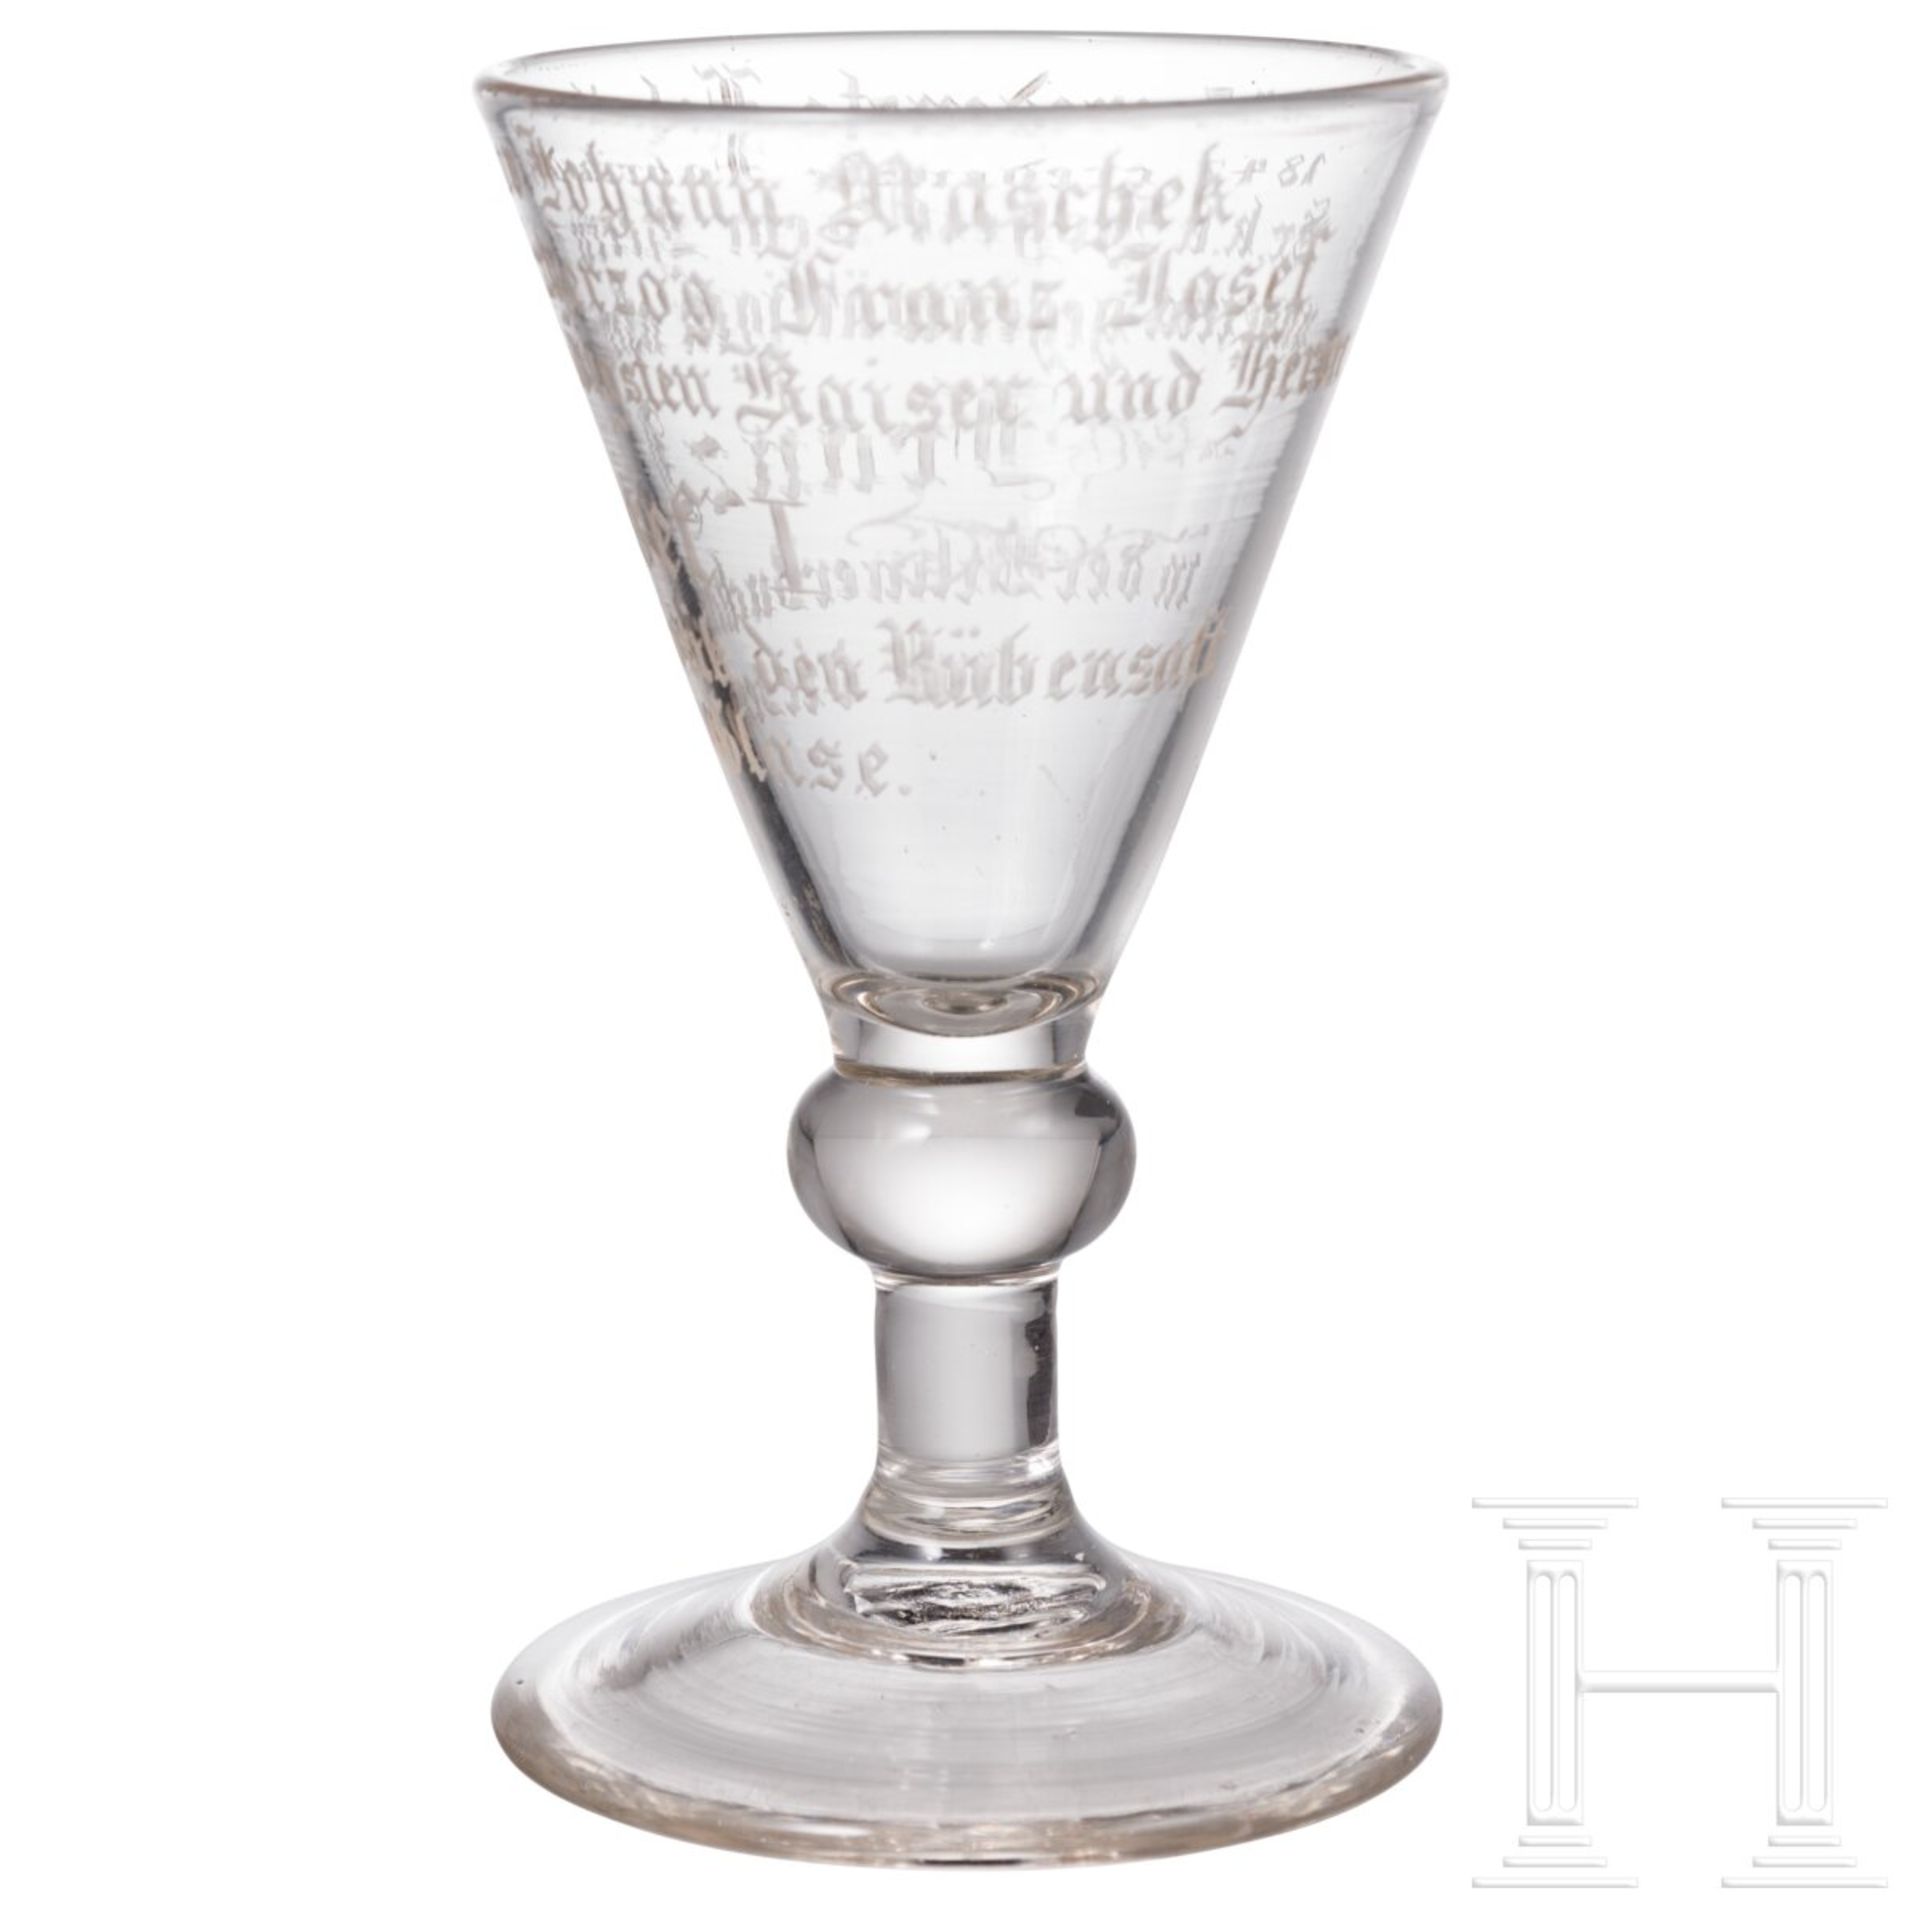 Kaiser Franz Joseph I. - Likörglas mit Geschenkinschrift, datiert 1847 - Bild 3 aus 4